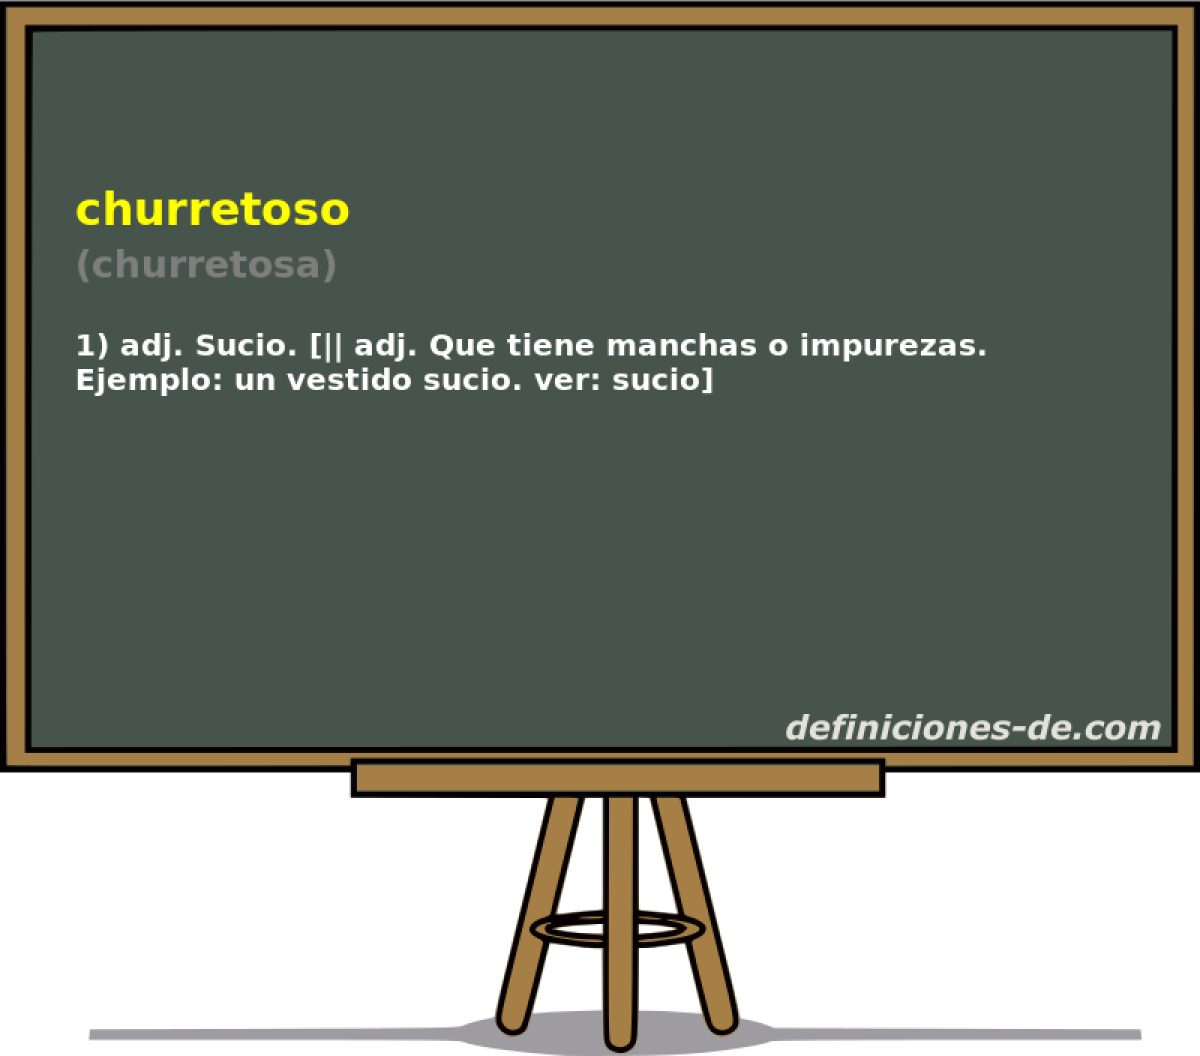 churretoso (churretosa)